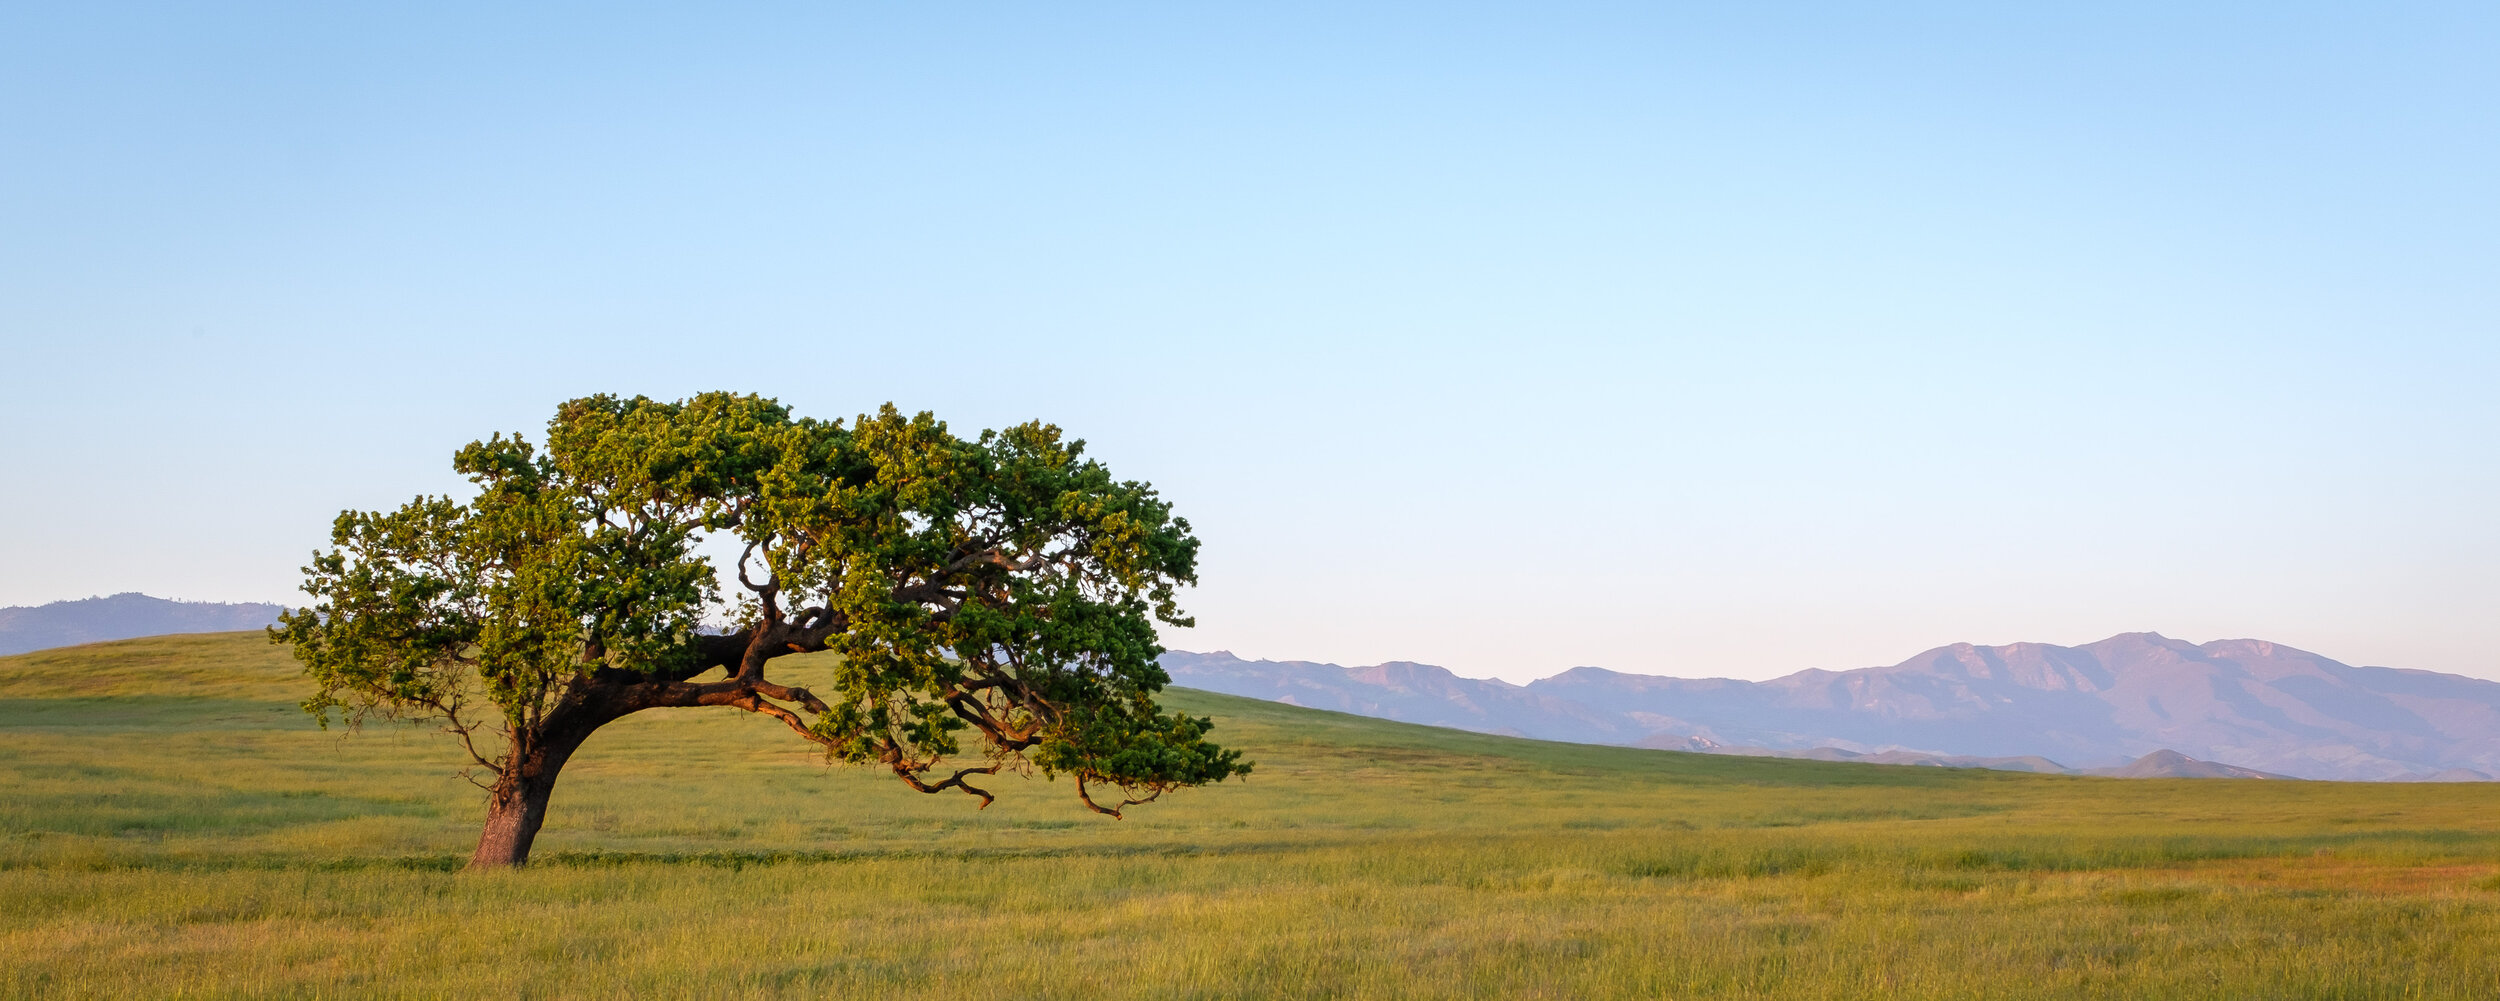  Oak and pasture. Santa Ynez, California, April 2020. 